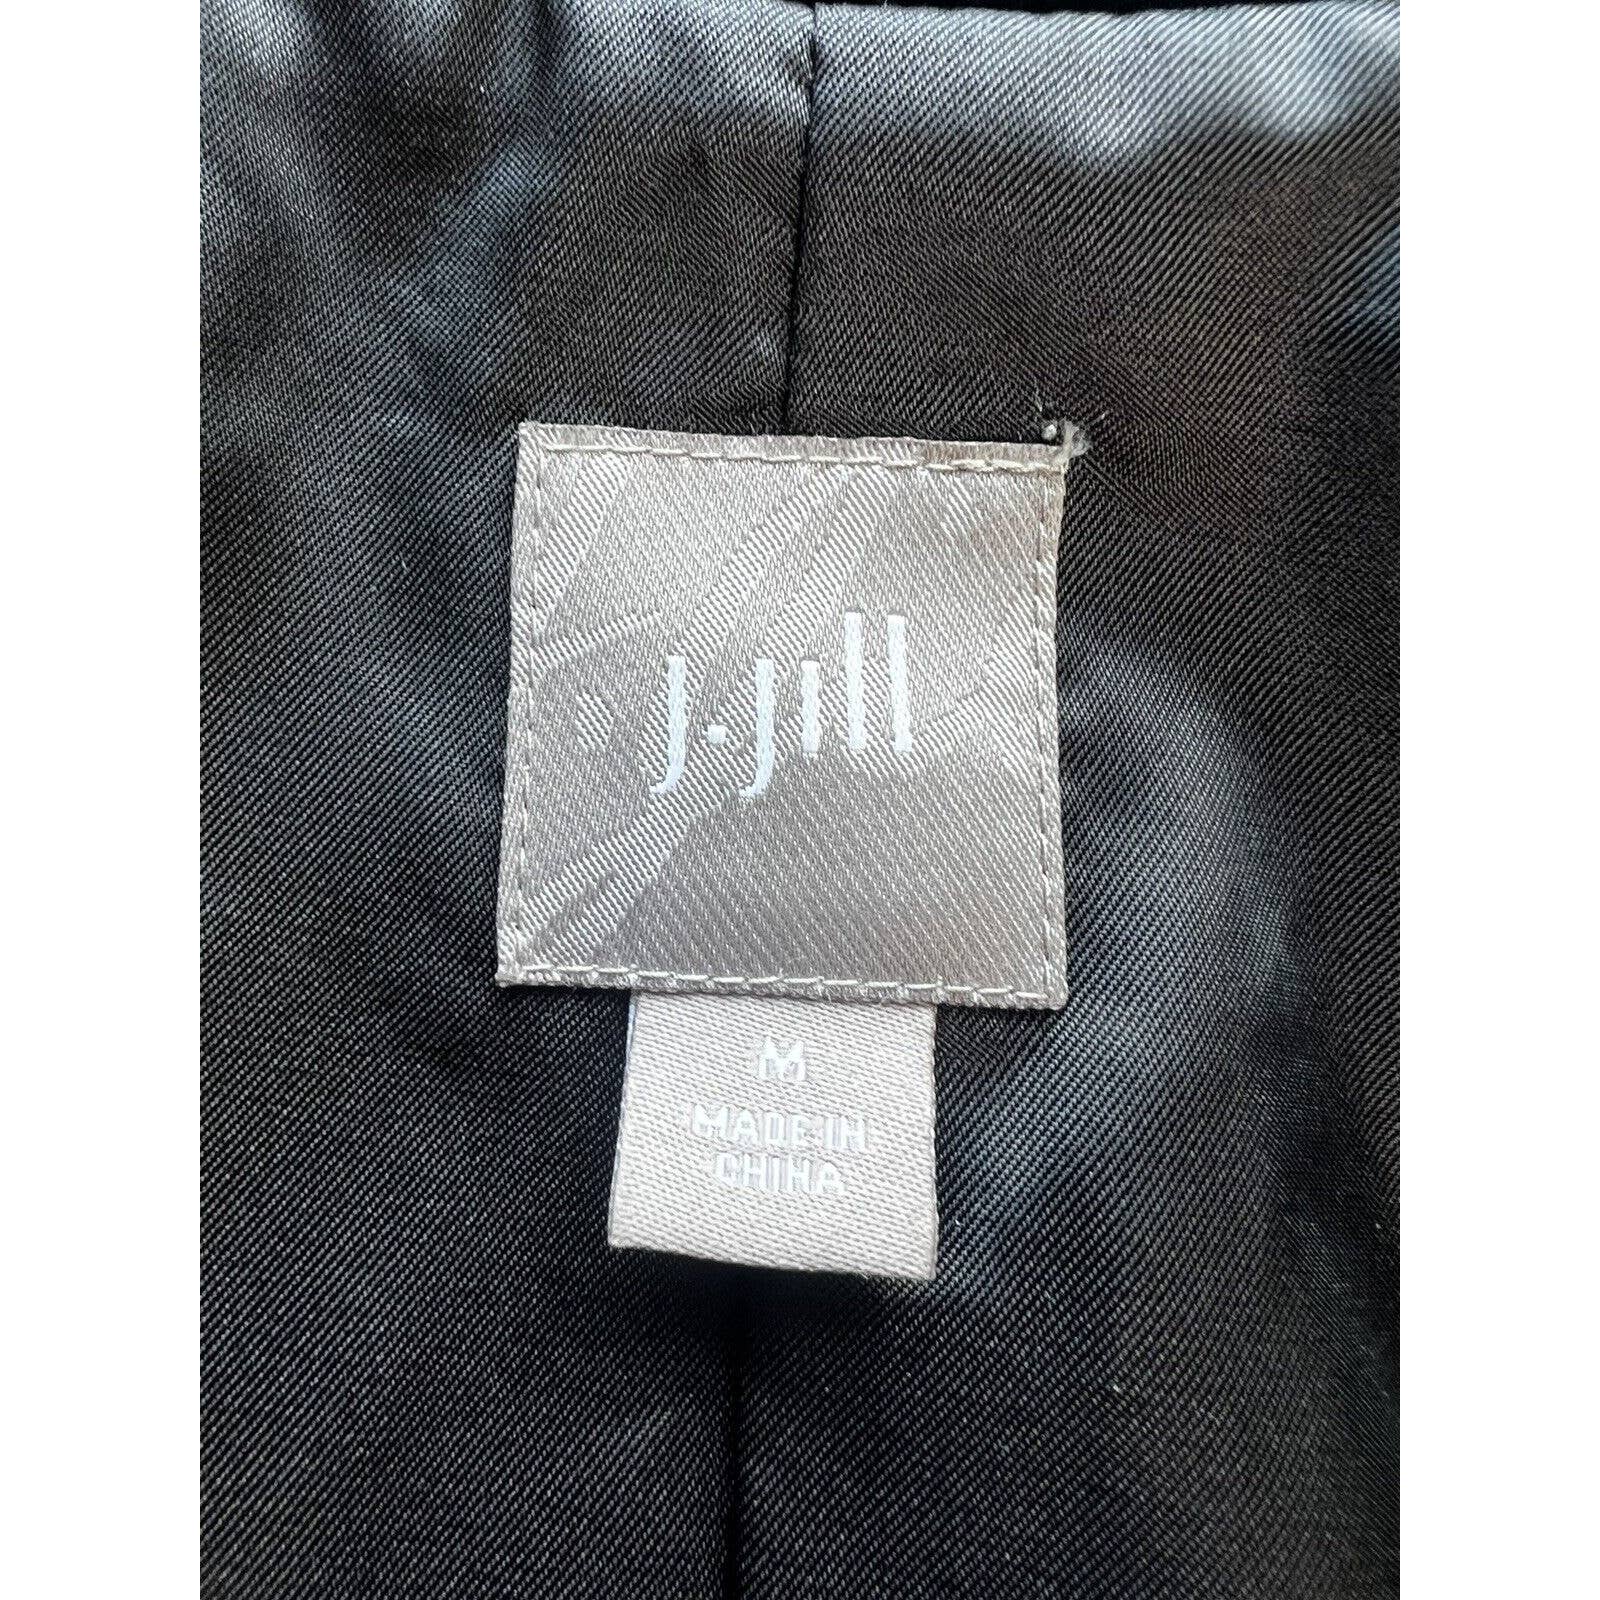 J Jill Double Breasted Vest Womens Medium Black Velvet Silk Blend Sleeveless